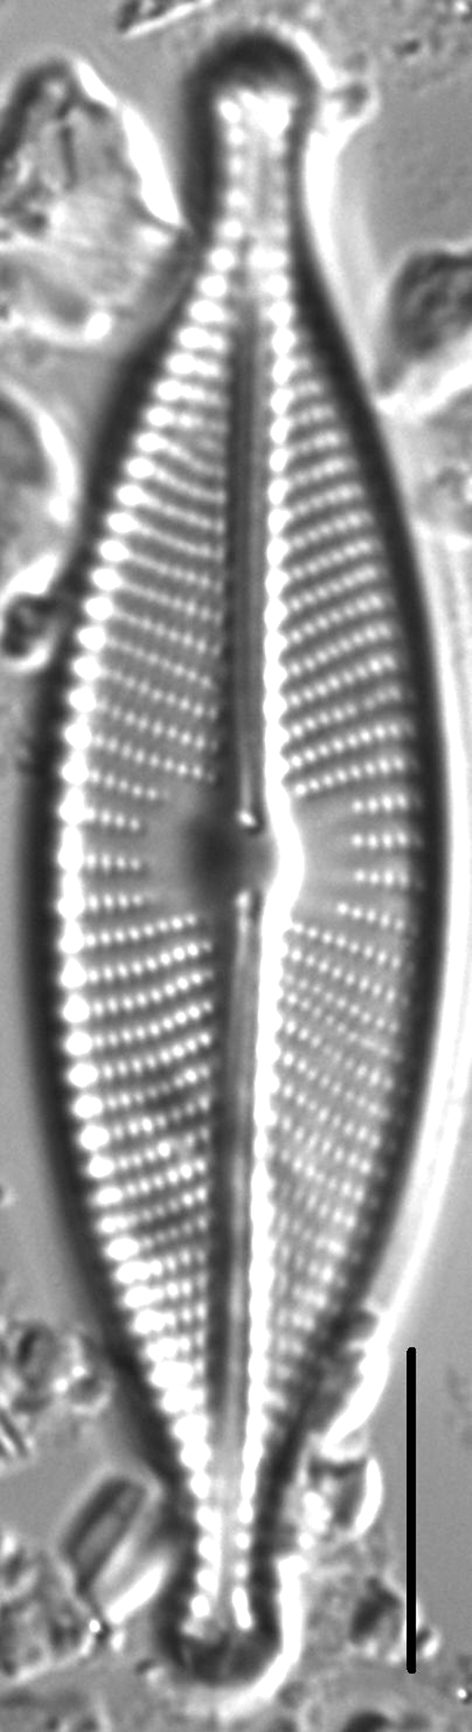 Navicula rhynchotella LM2